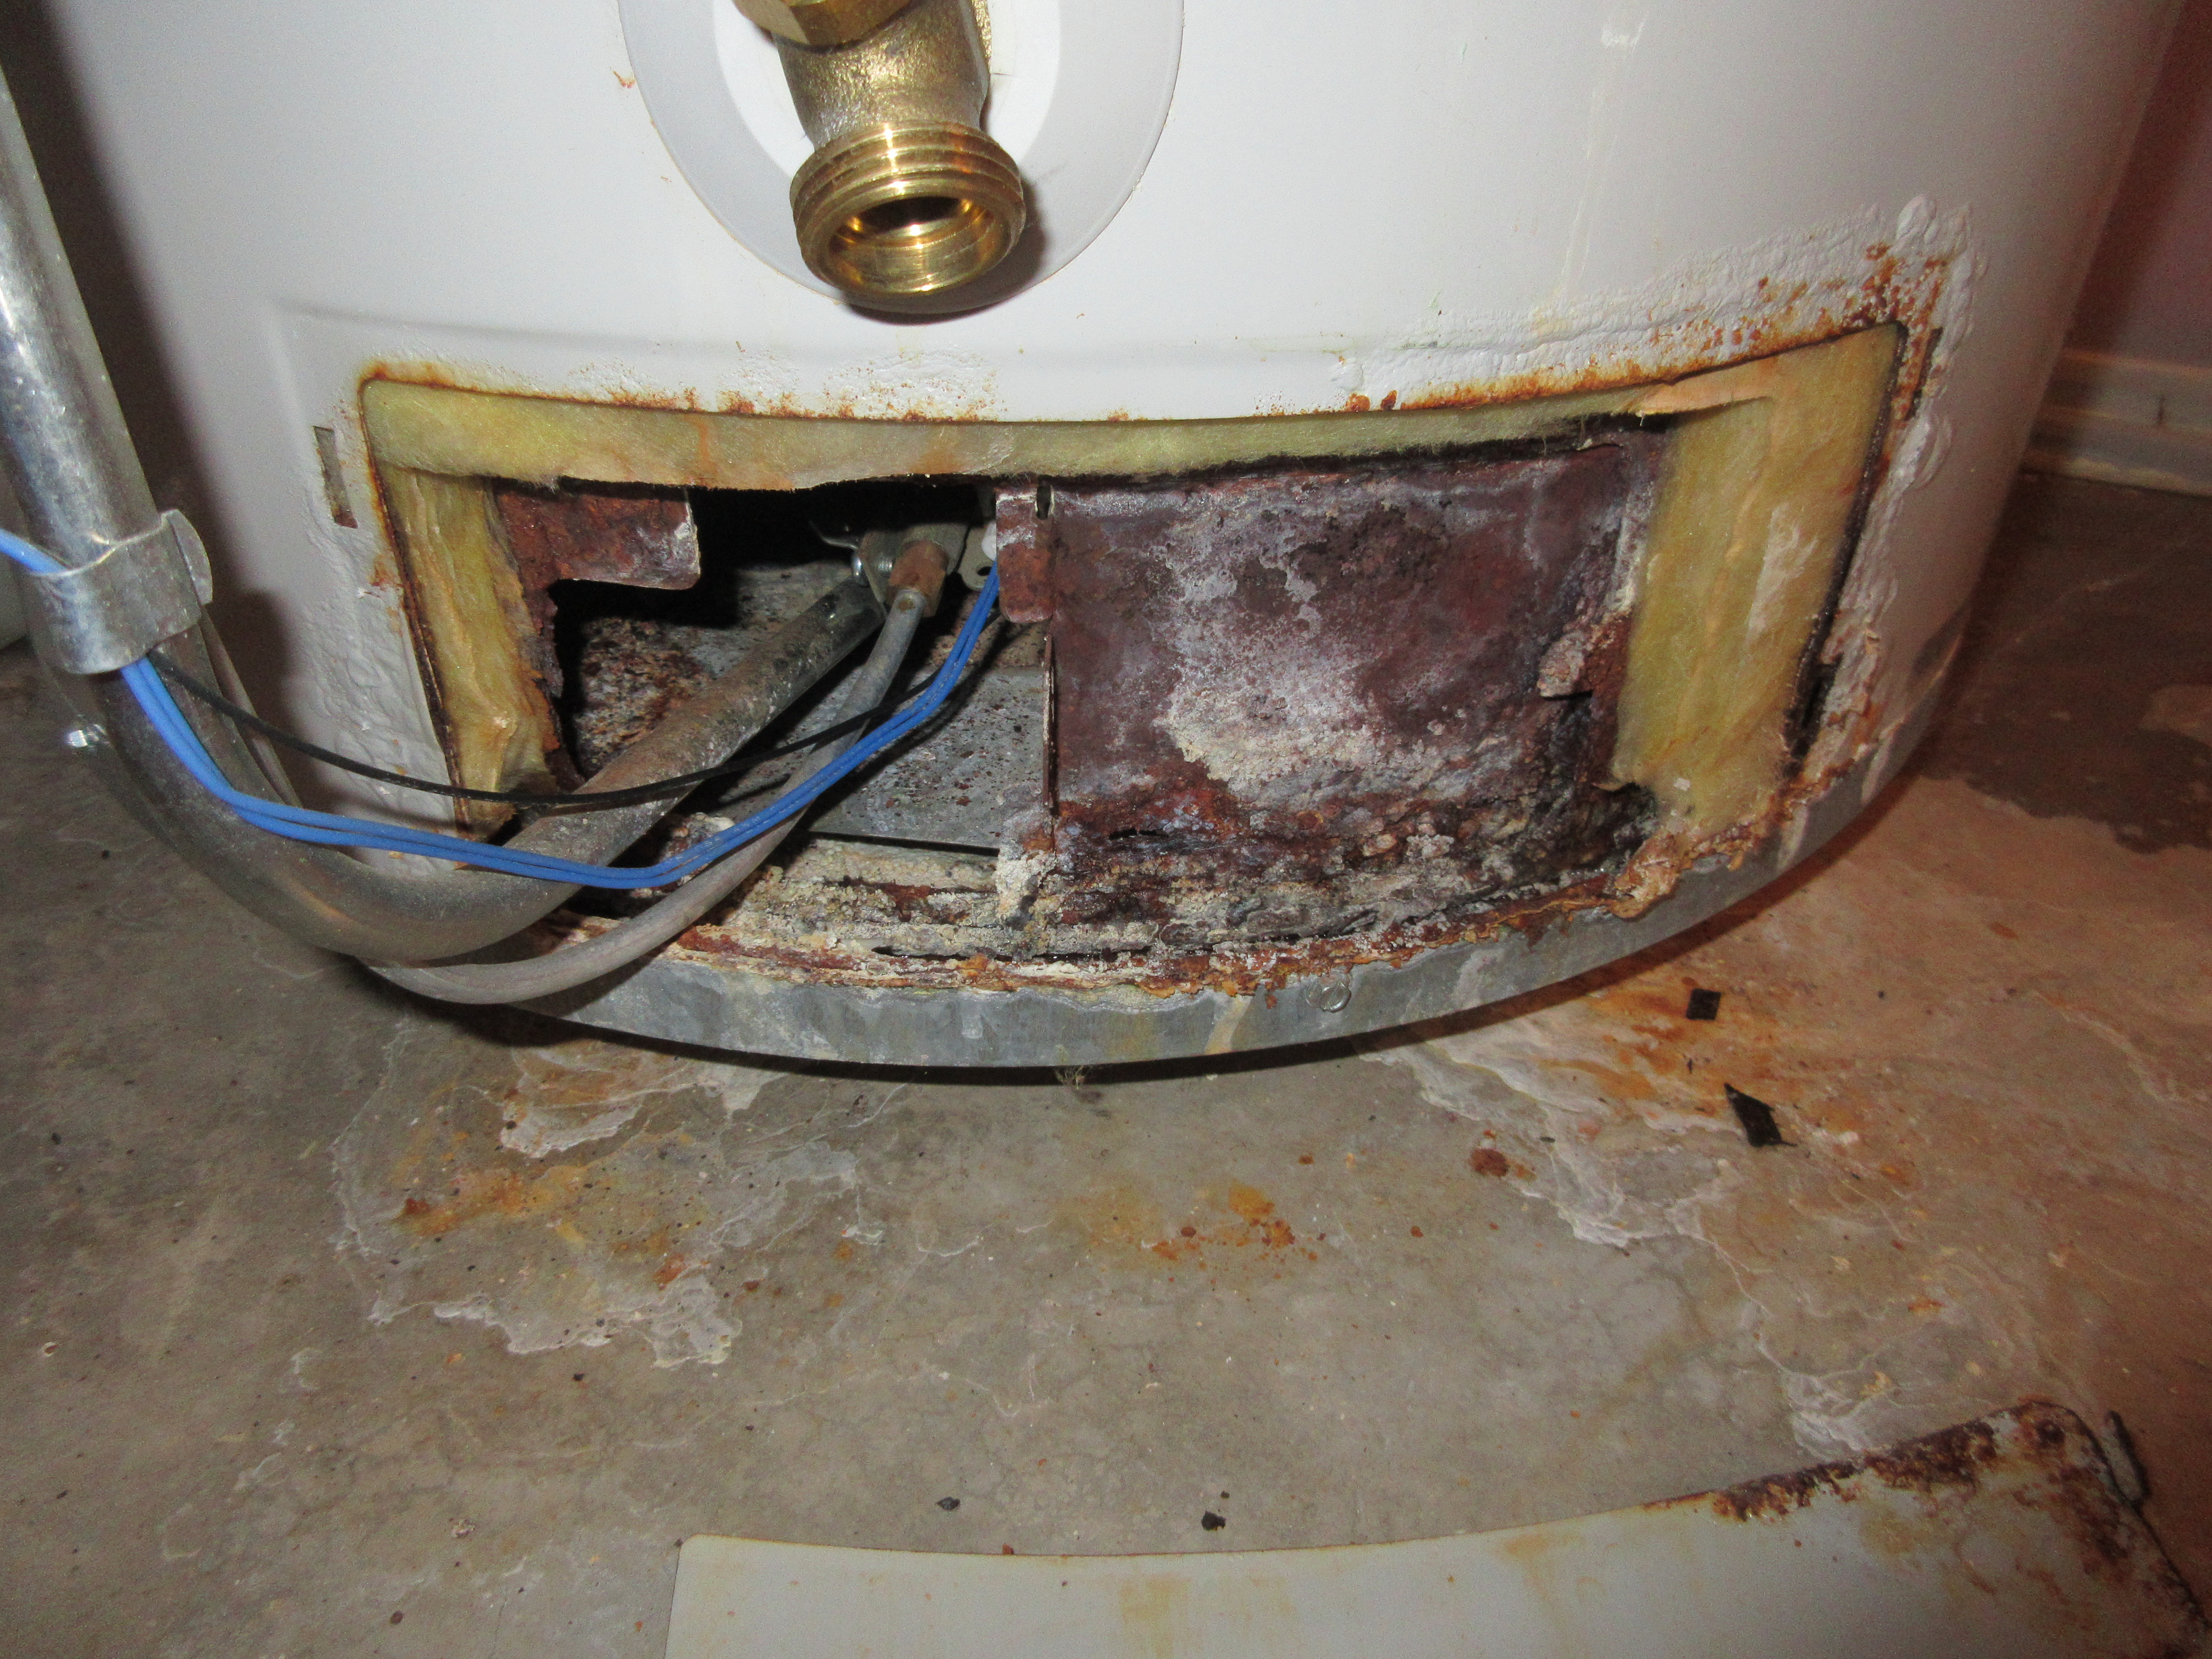 Rusty water heater